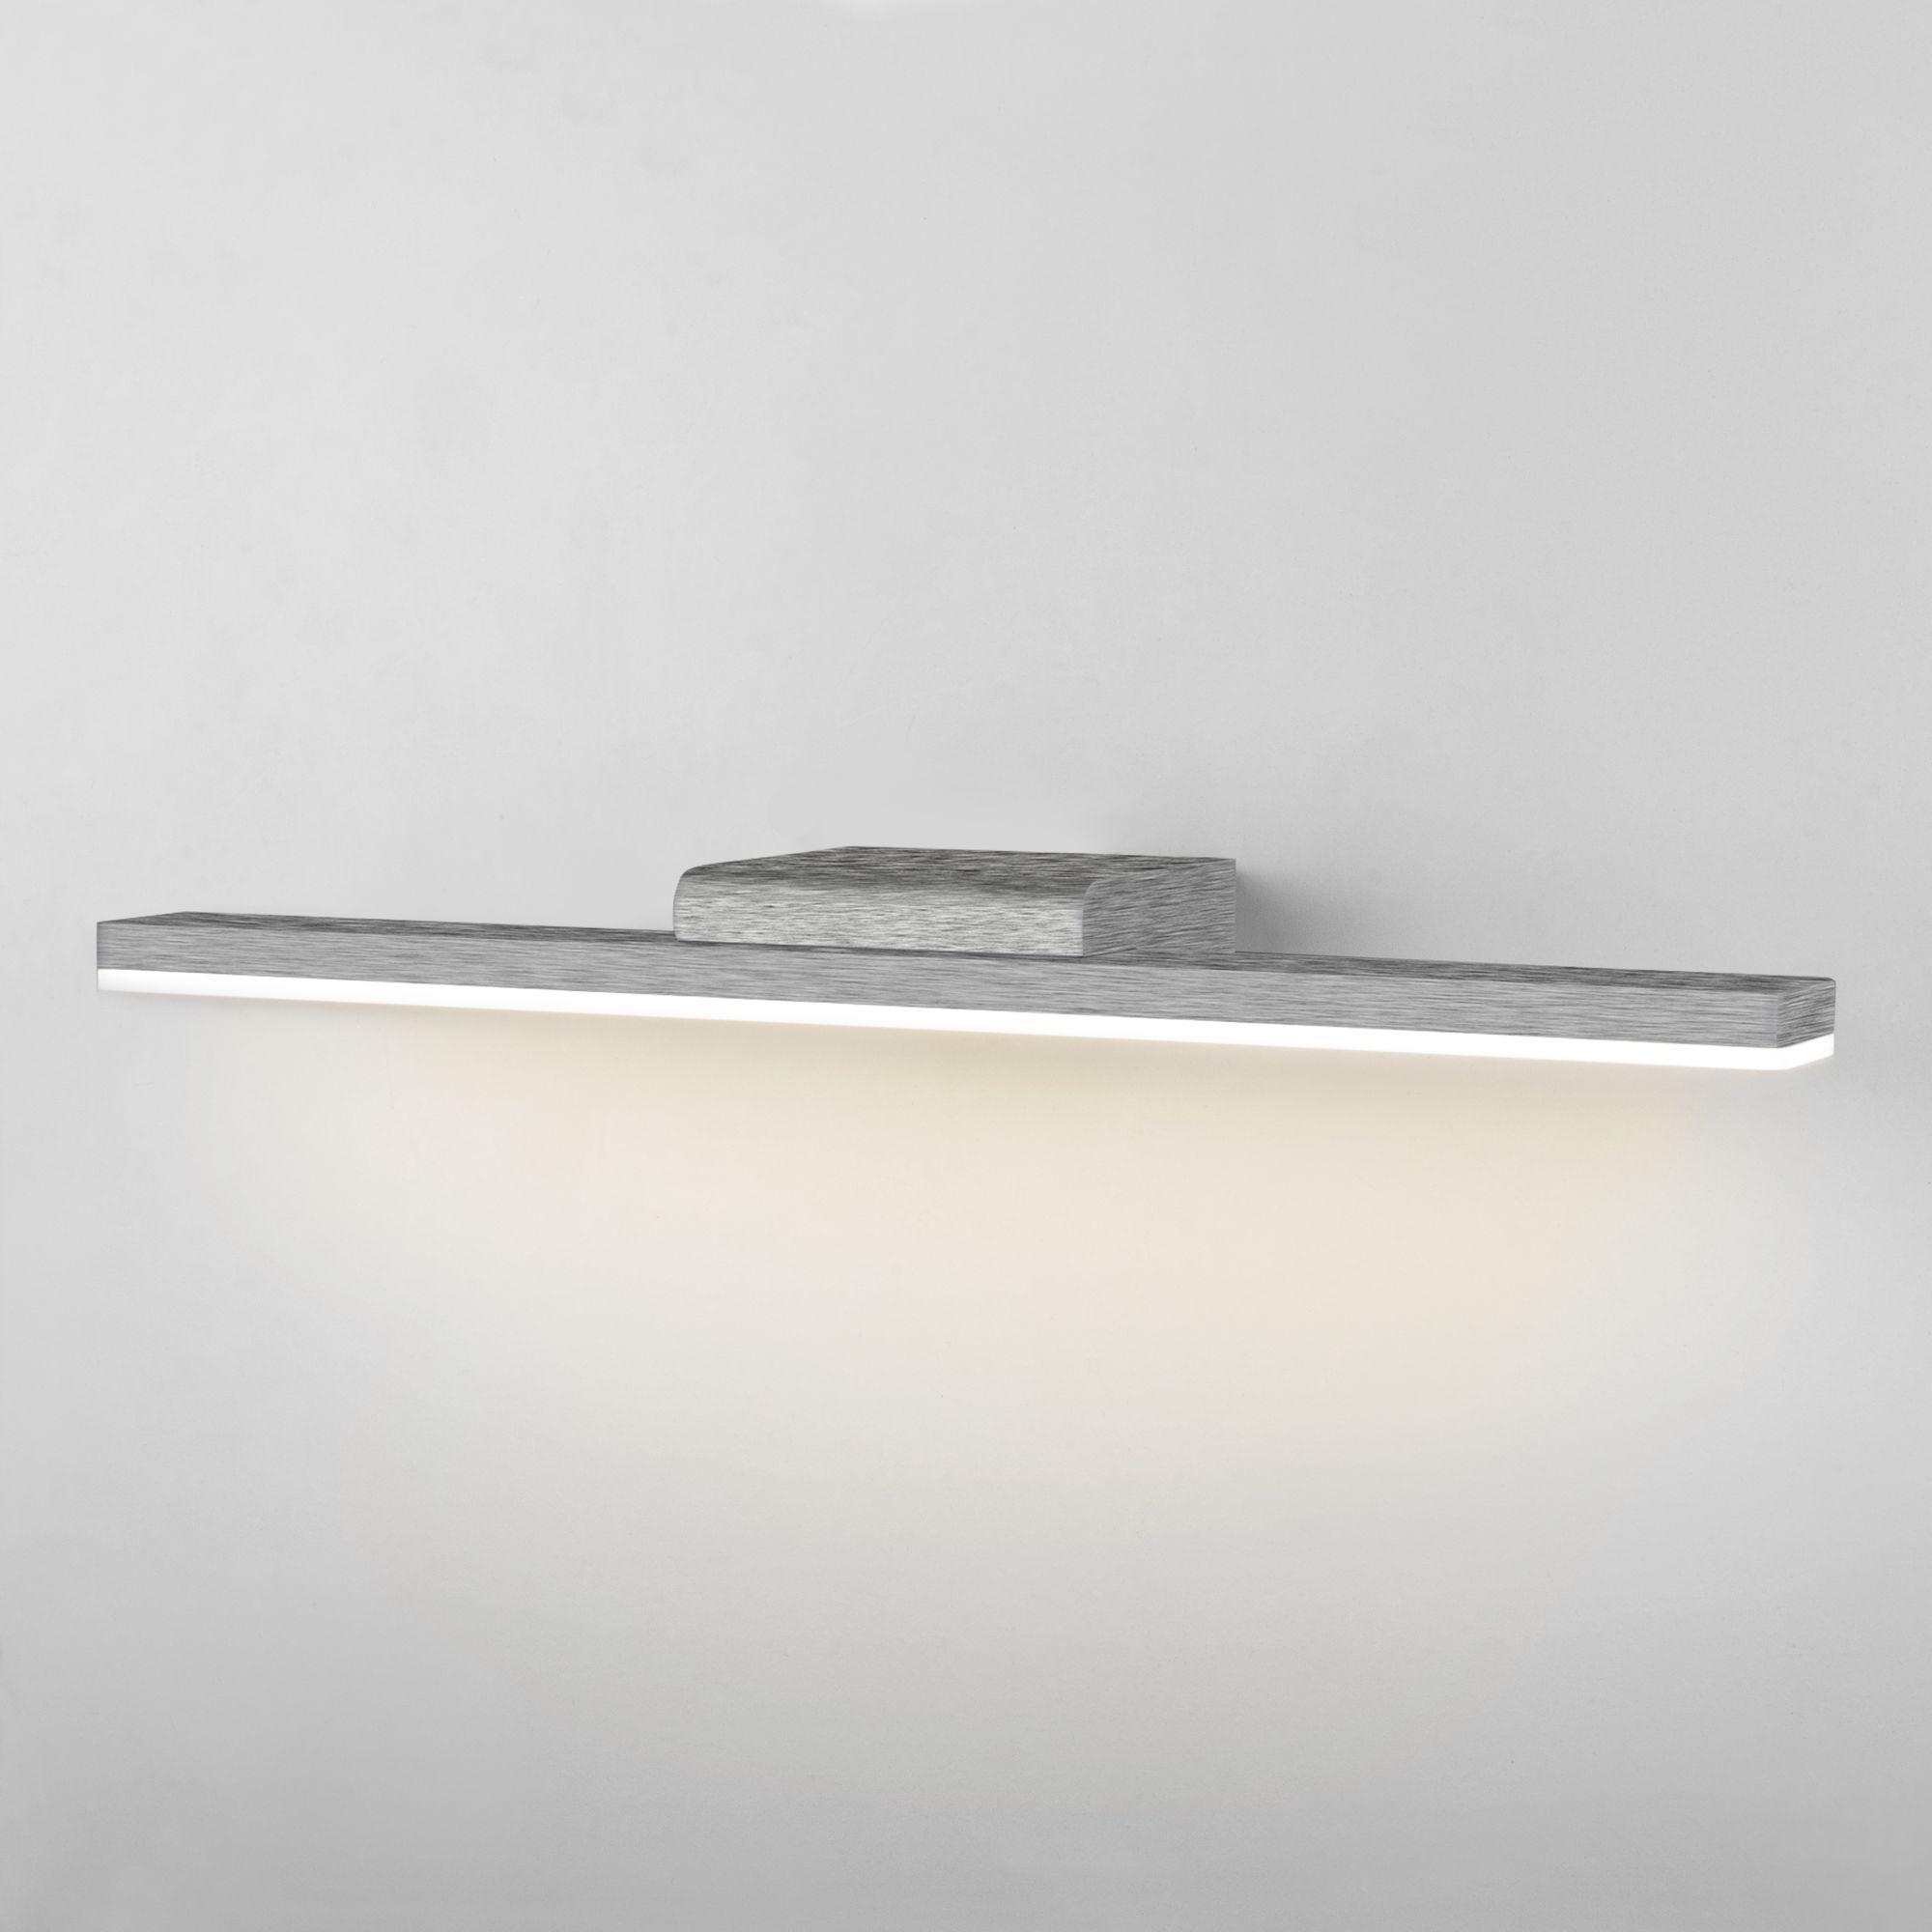 Настенный светодиодный светильник Protect LED Elektrostandard Protect MRL LED 1111 алюминий. Фото 1